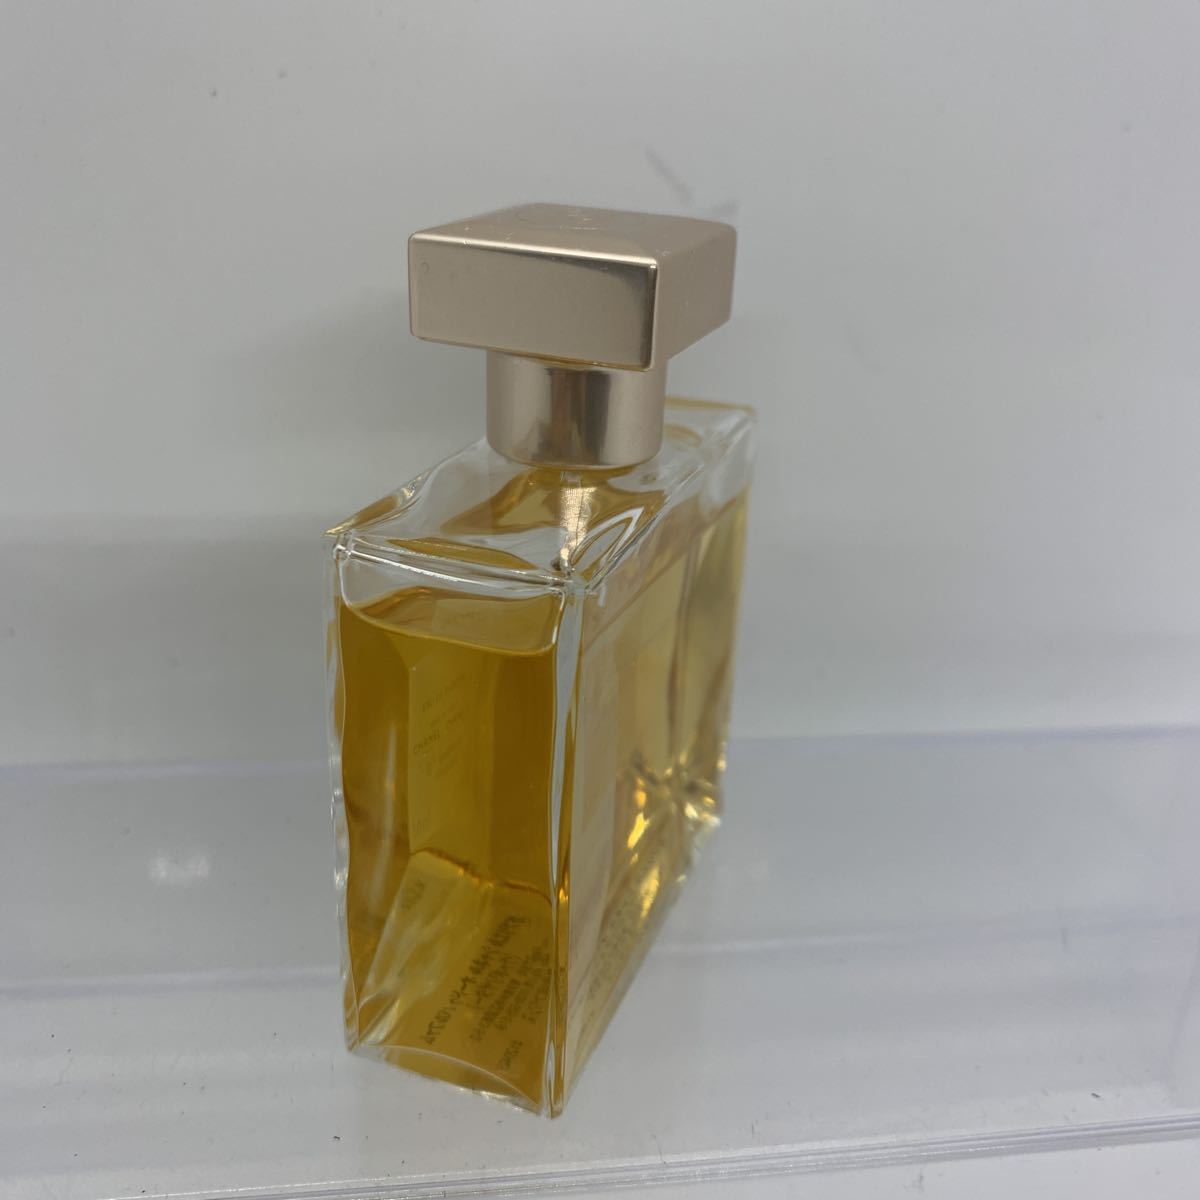  perfume CHANEL Chanel GABRIELLEga yellowtail L 50ml 2102A52